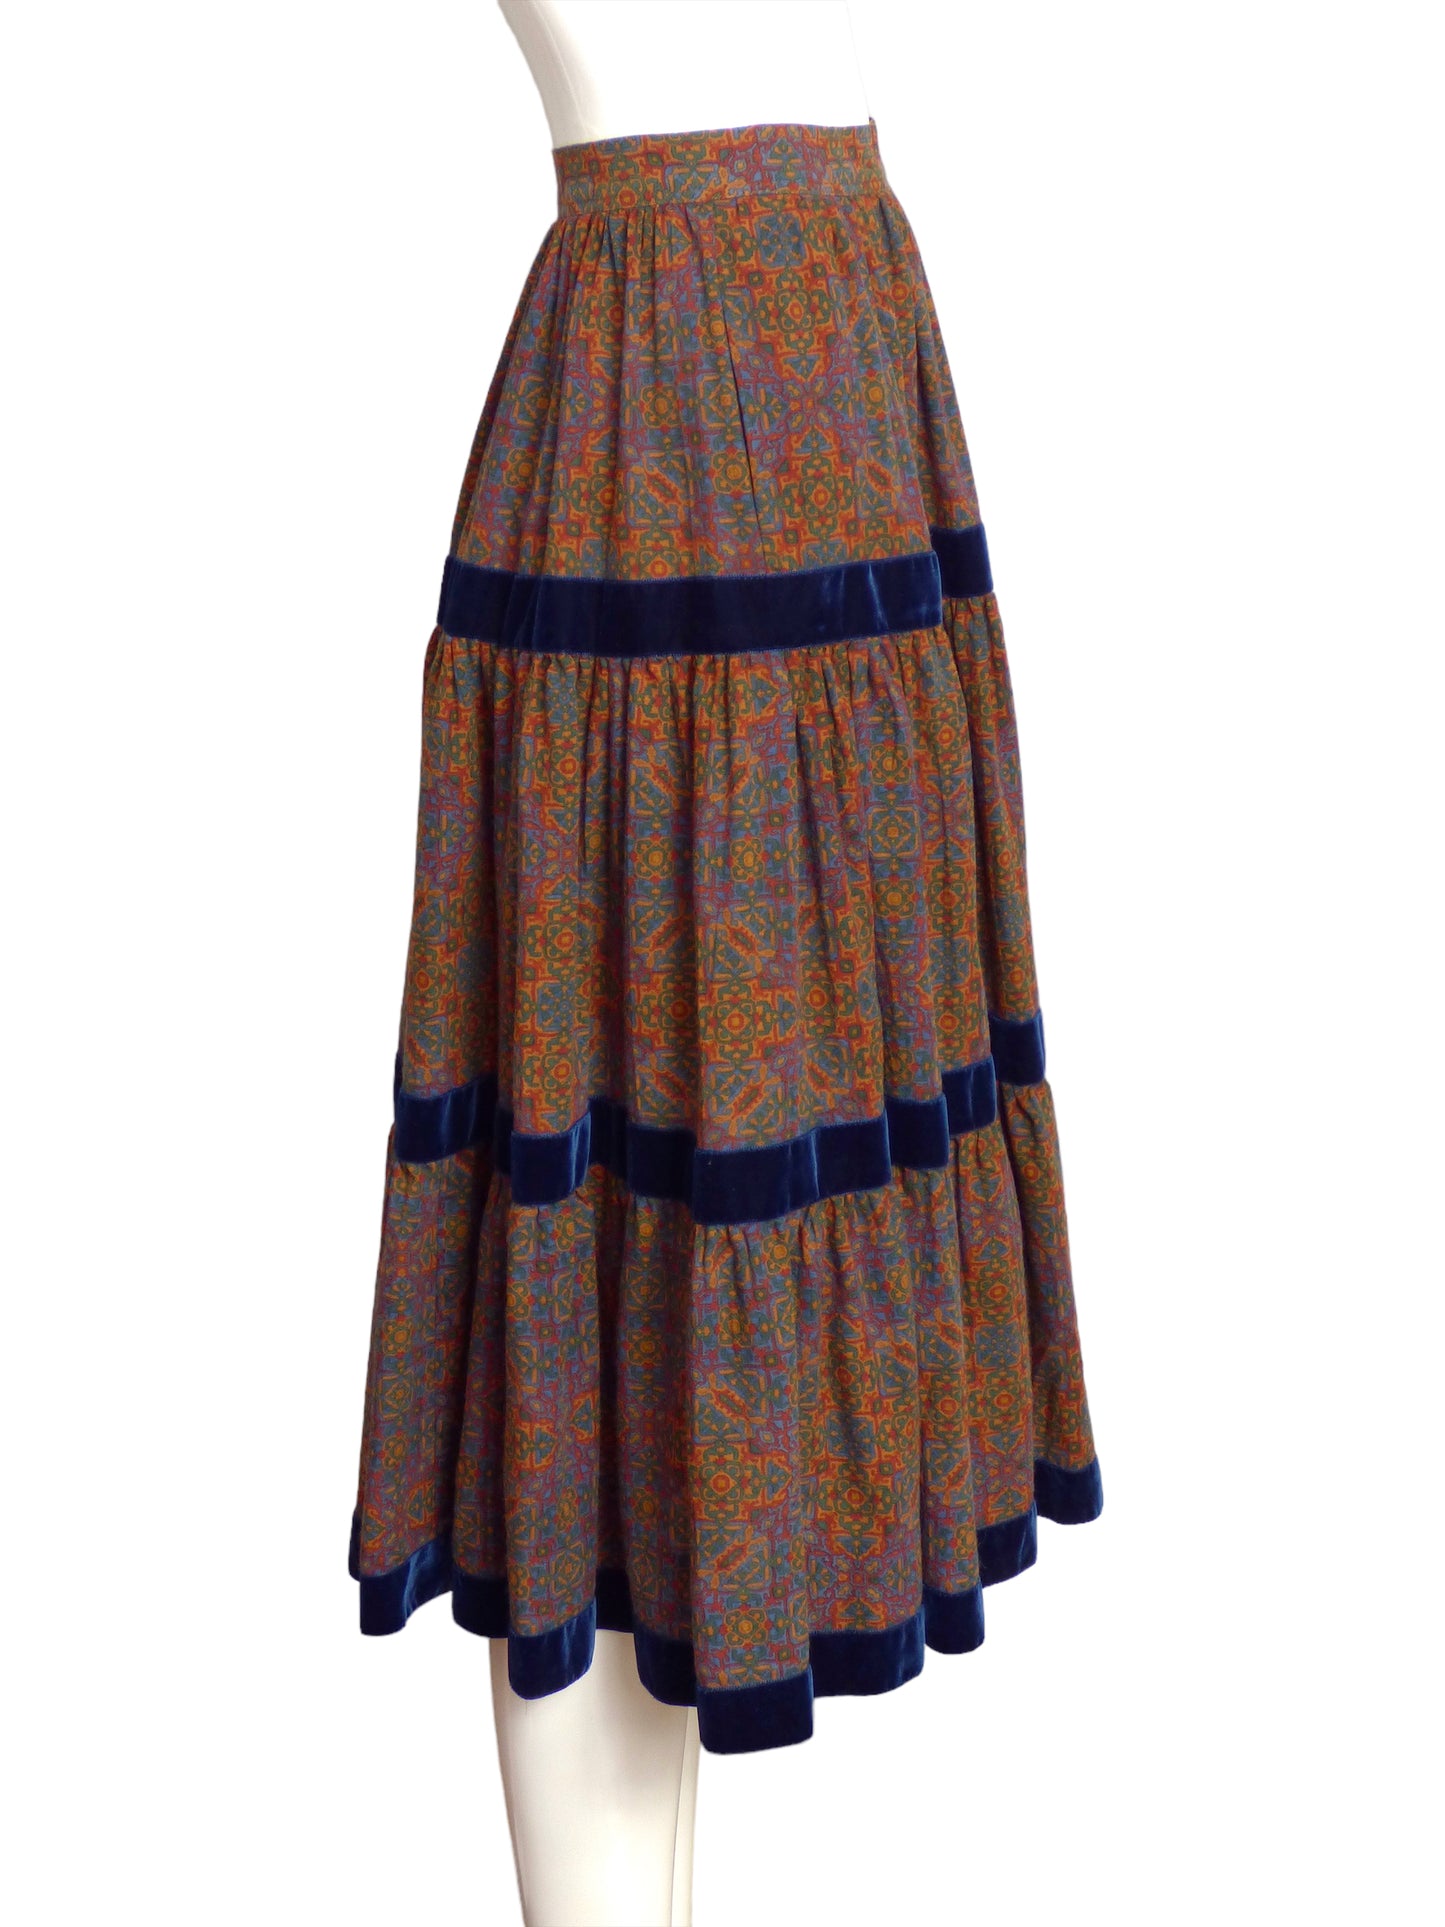 YVES SAINT LAURENT- 1980s Wool Print & Velvet Skirt, Size 4